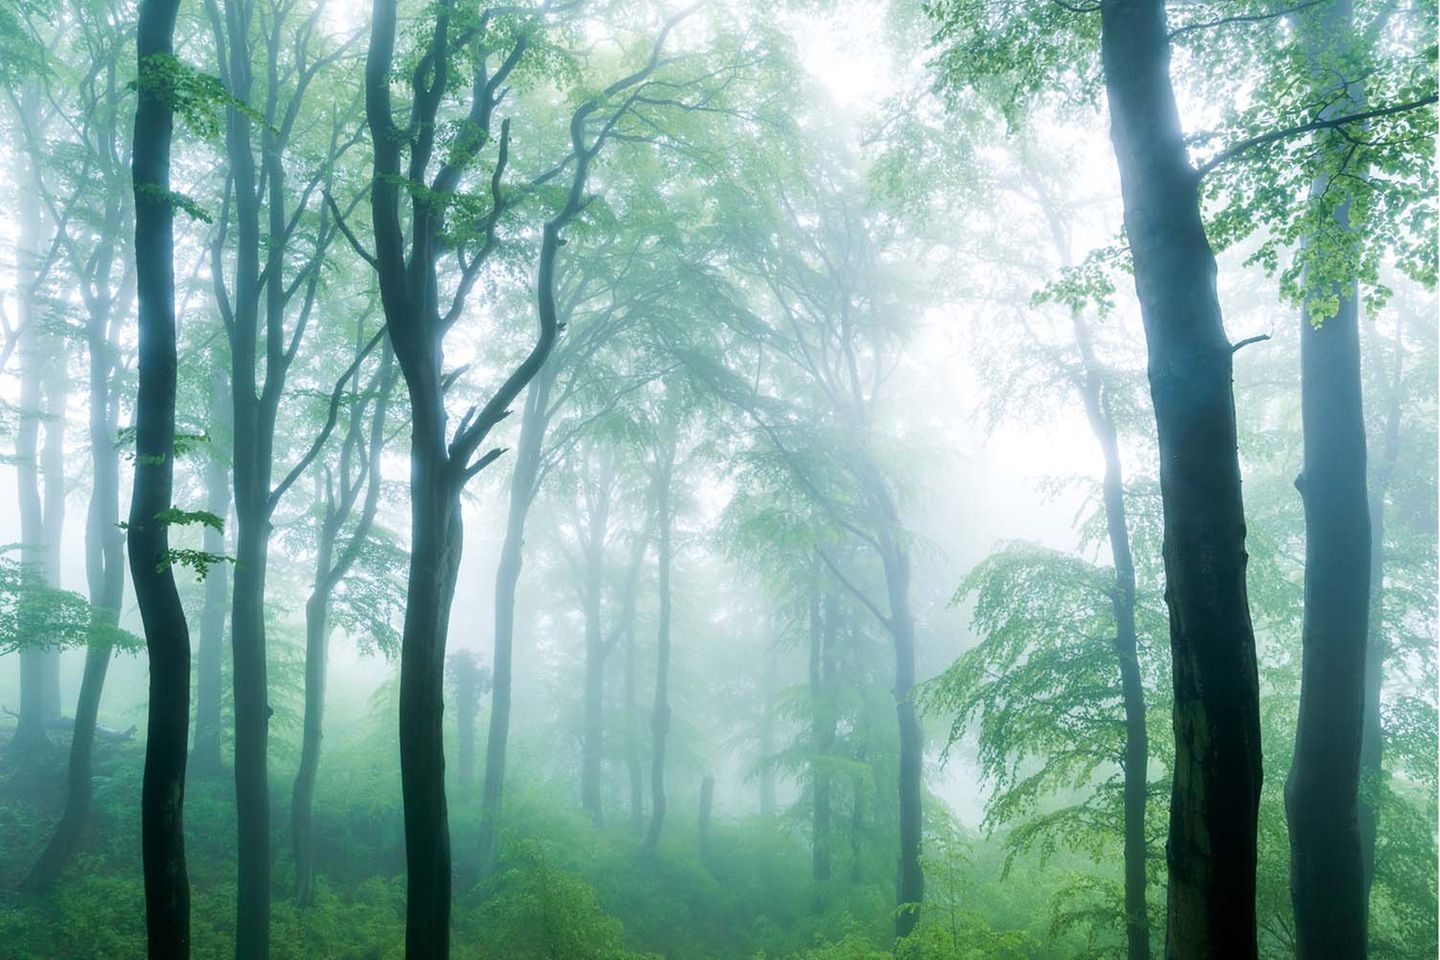 Eine mystisch anmutende Szene fing Florian Nessler mit seinem Bild "Küstennebel" ein. Starker Nebel und hohe Kontraste zwischen weißem Nebel und fast schwarzen Baumsilhouetten im Frühlingswald geben dem Bild seinen Ausdruck. Krumm gewachsene Baumstämme und viel Unterwuchs auf dem Waldboden zeugen von einem naturnahen Standort